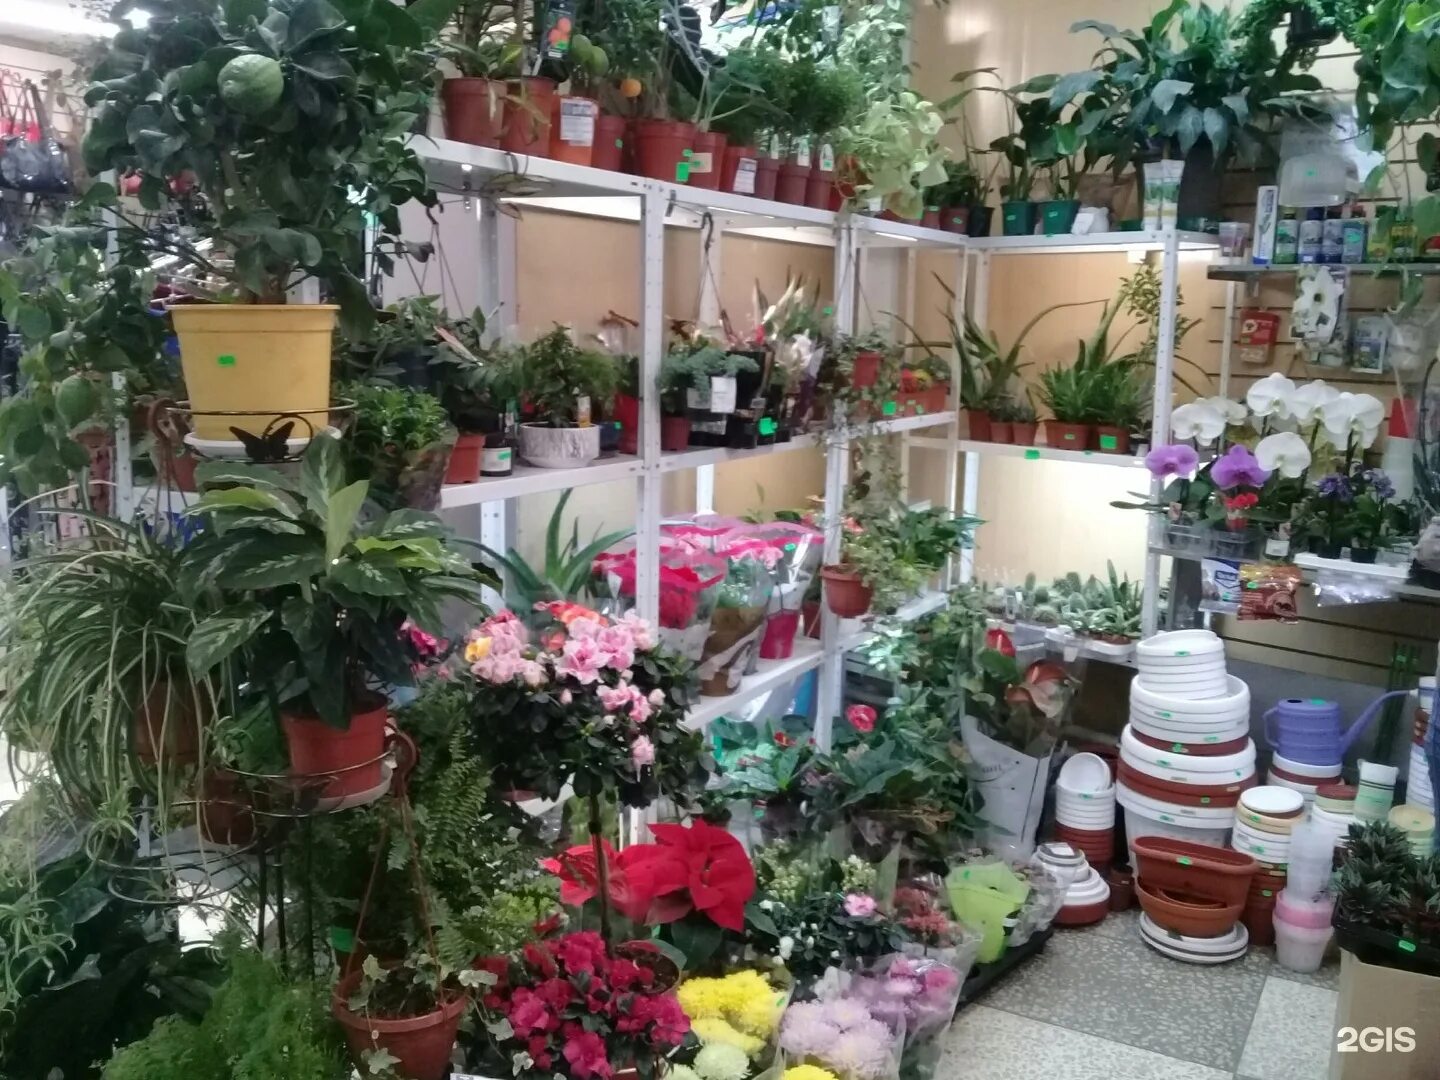 Комнатные цветы в магазине. Магазин горшечных цветов. Магазин комнатных растений интерьер. Цветочные магазины в Москве комнатные растения.